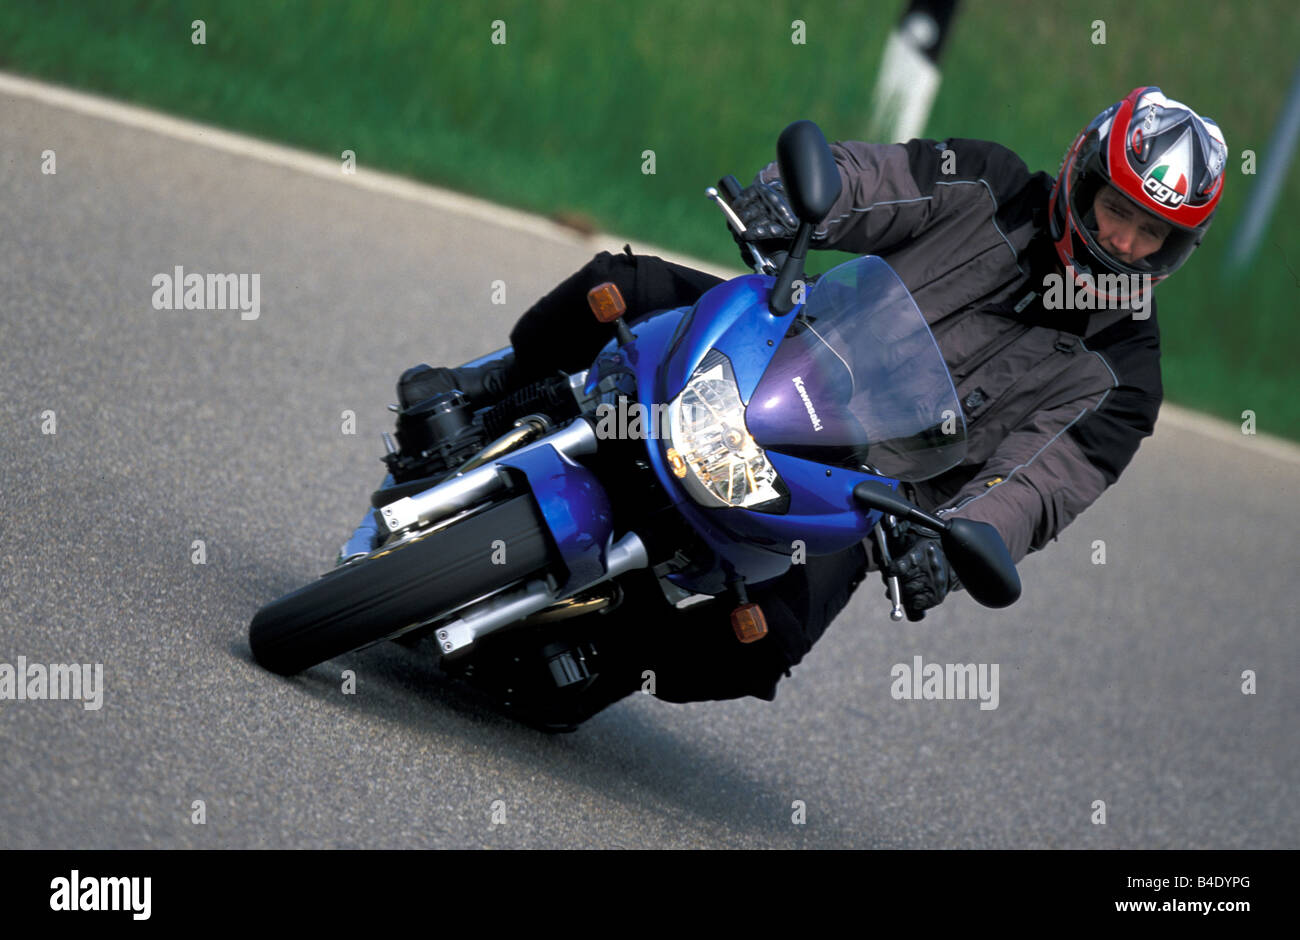 Motor Cycle, Sport Motorrad, Sporttourer, Kawasaki ZR-7 s, blau, Baujahr 2003, fahren, Schräglage, Seitenlage, Stockfoto